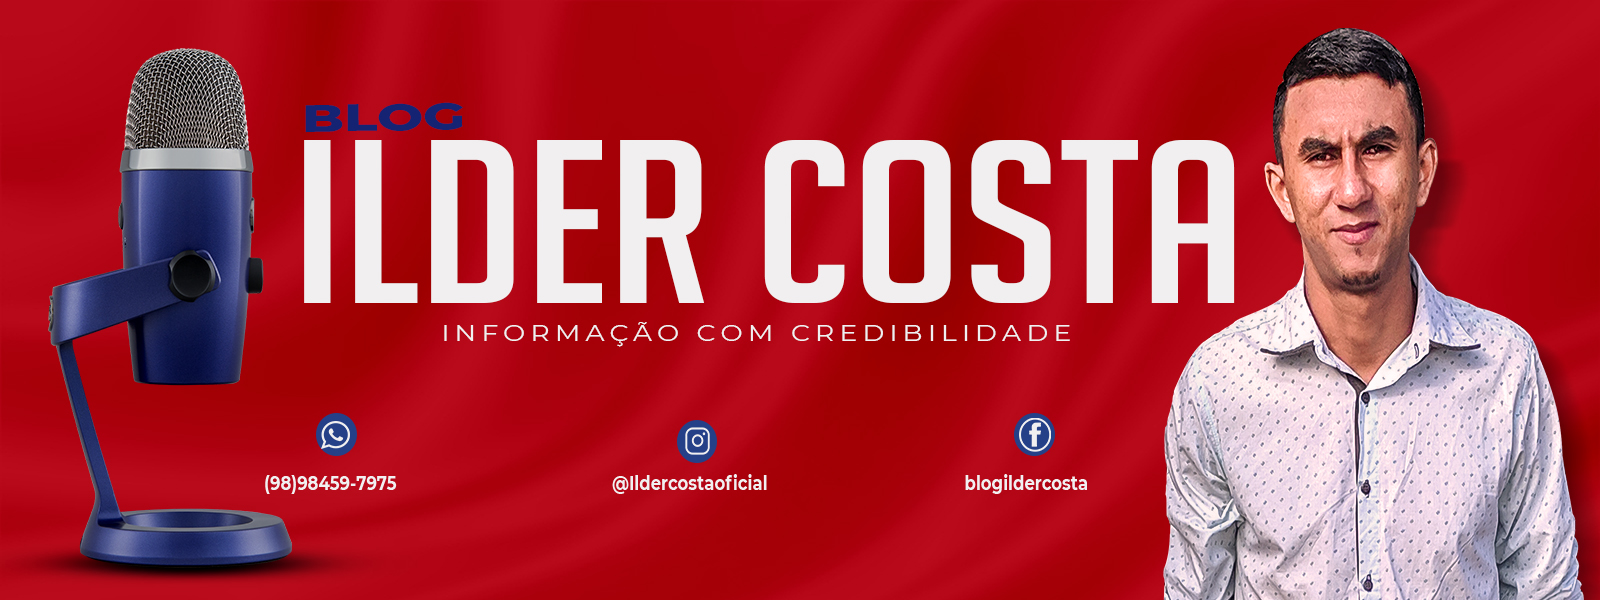 Blog Ilder Costa